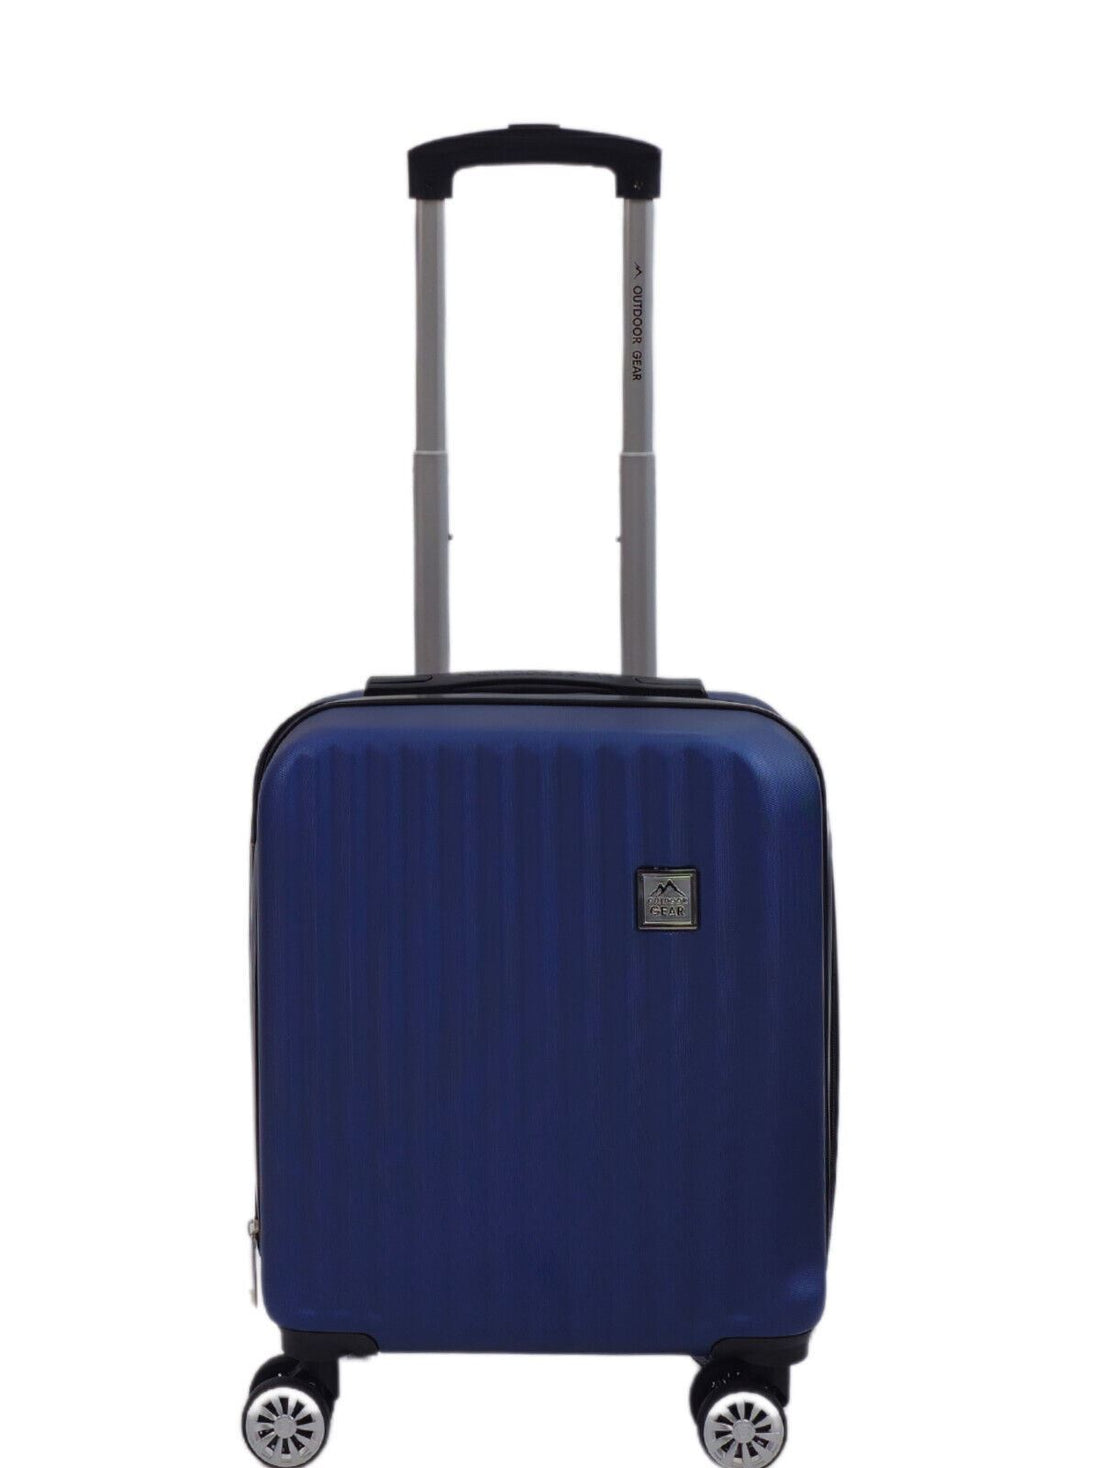 Albertville Underseat Hard Shell Suitcase in Blue